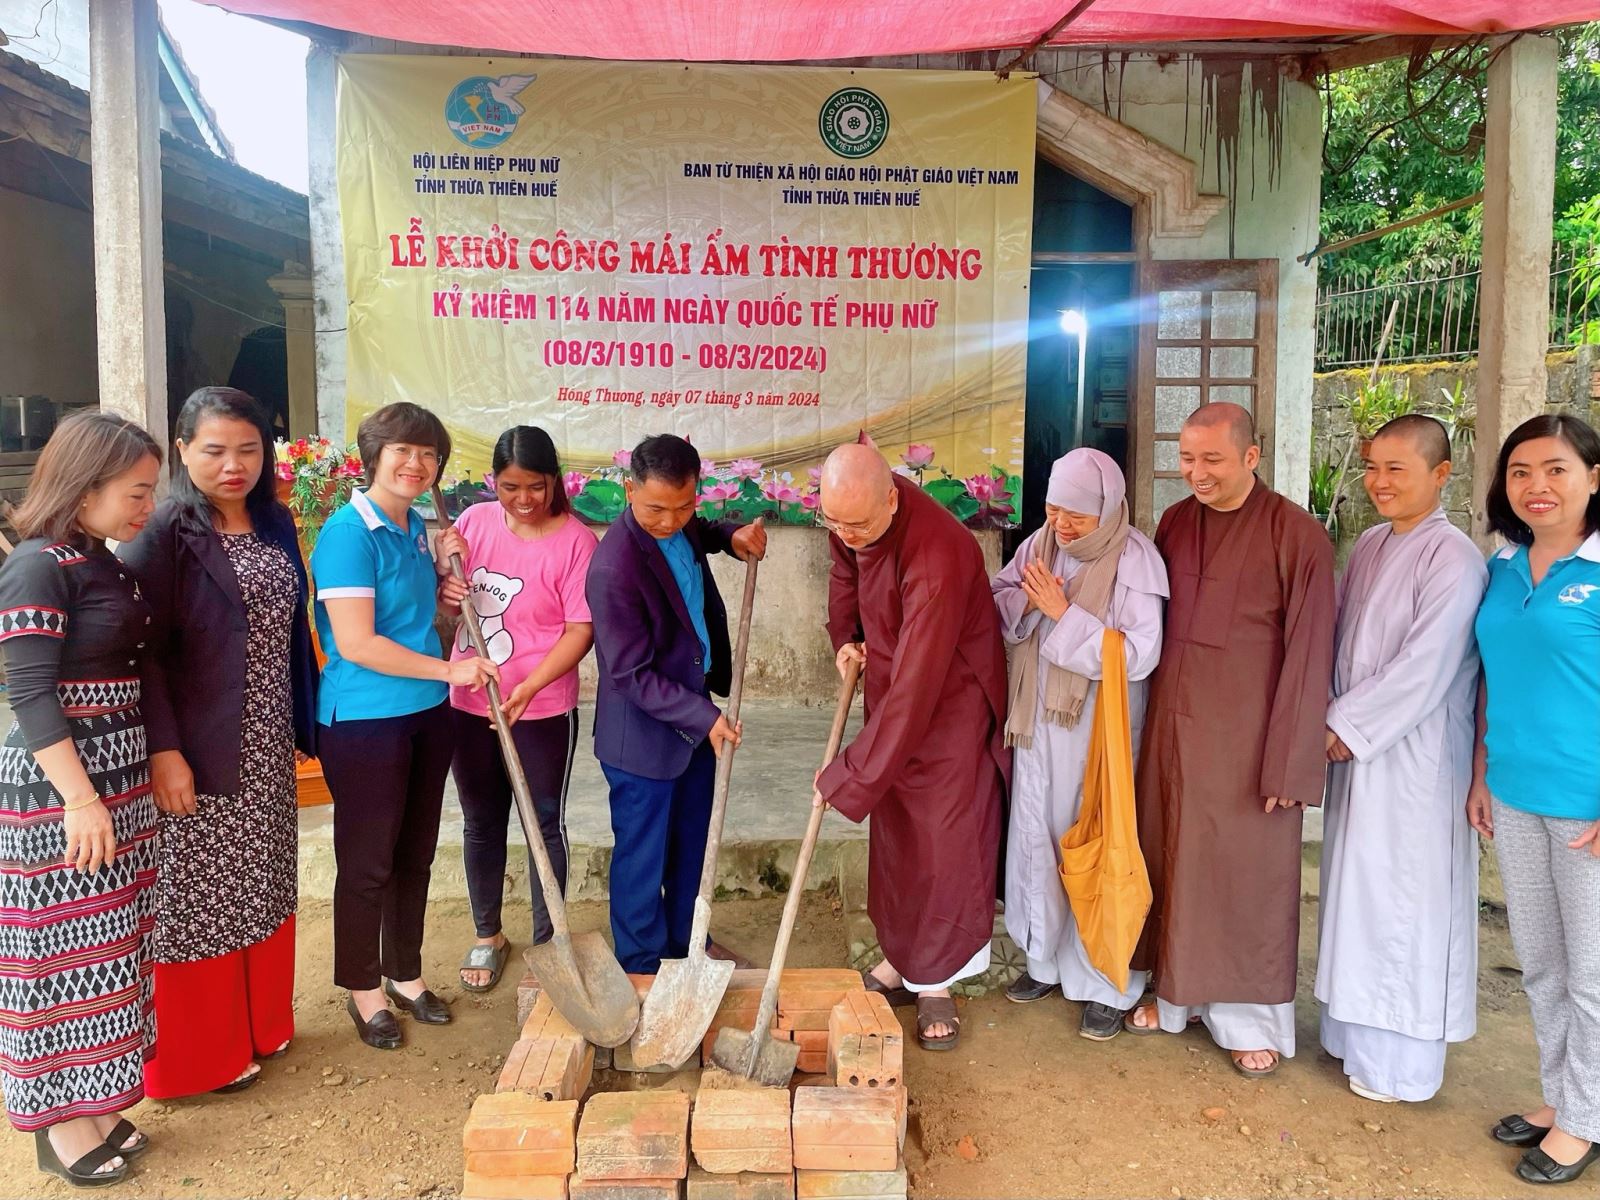 Ban Từ thiện Xã hội GHPGVN tỉnh Thừa Thiên Huế vừa phối hợp các tổ chức khởi công xây dựng nhà mái ấm tình thương cho gia đình bà Hồ Thị Hương.